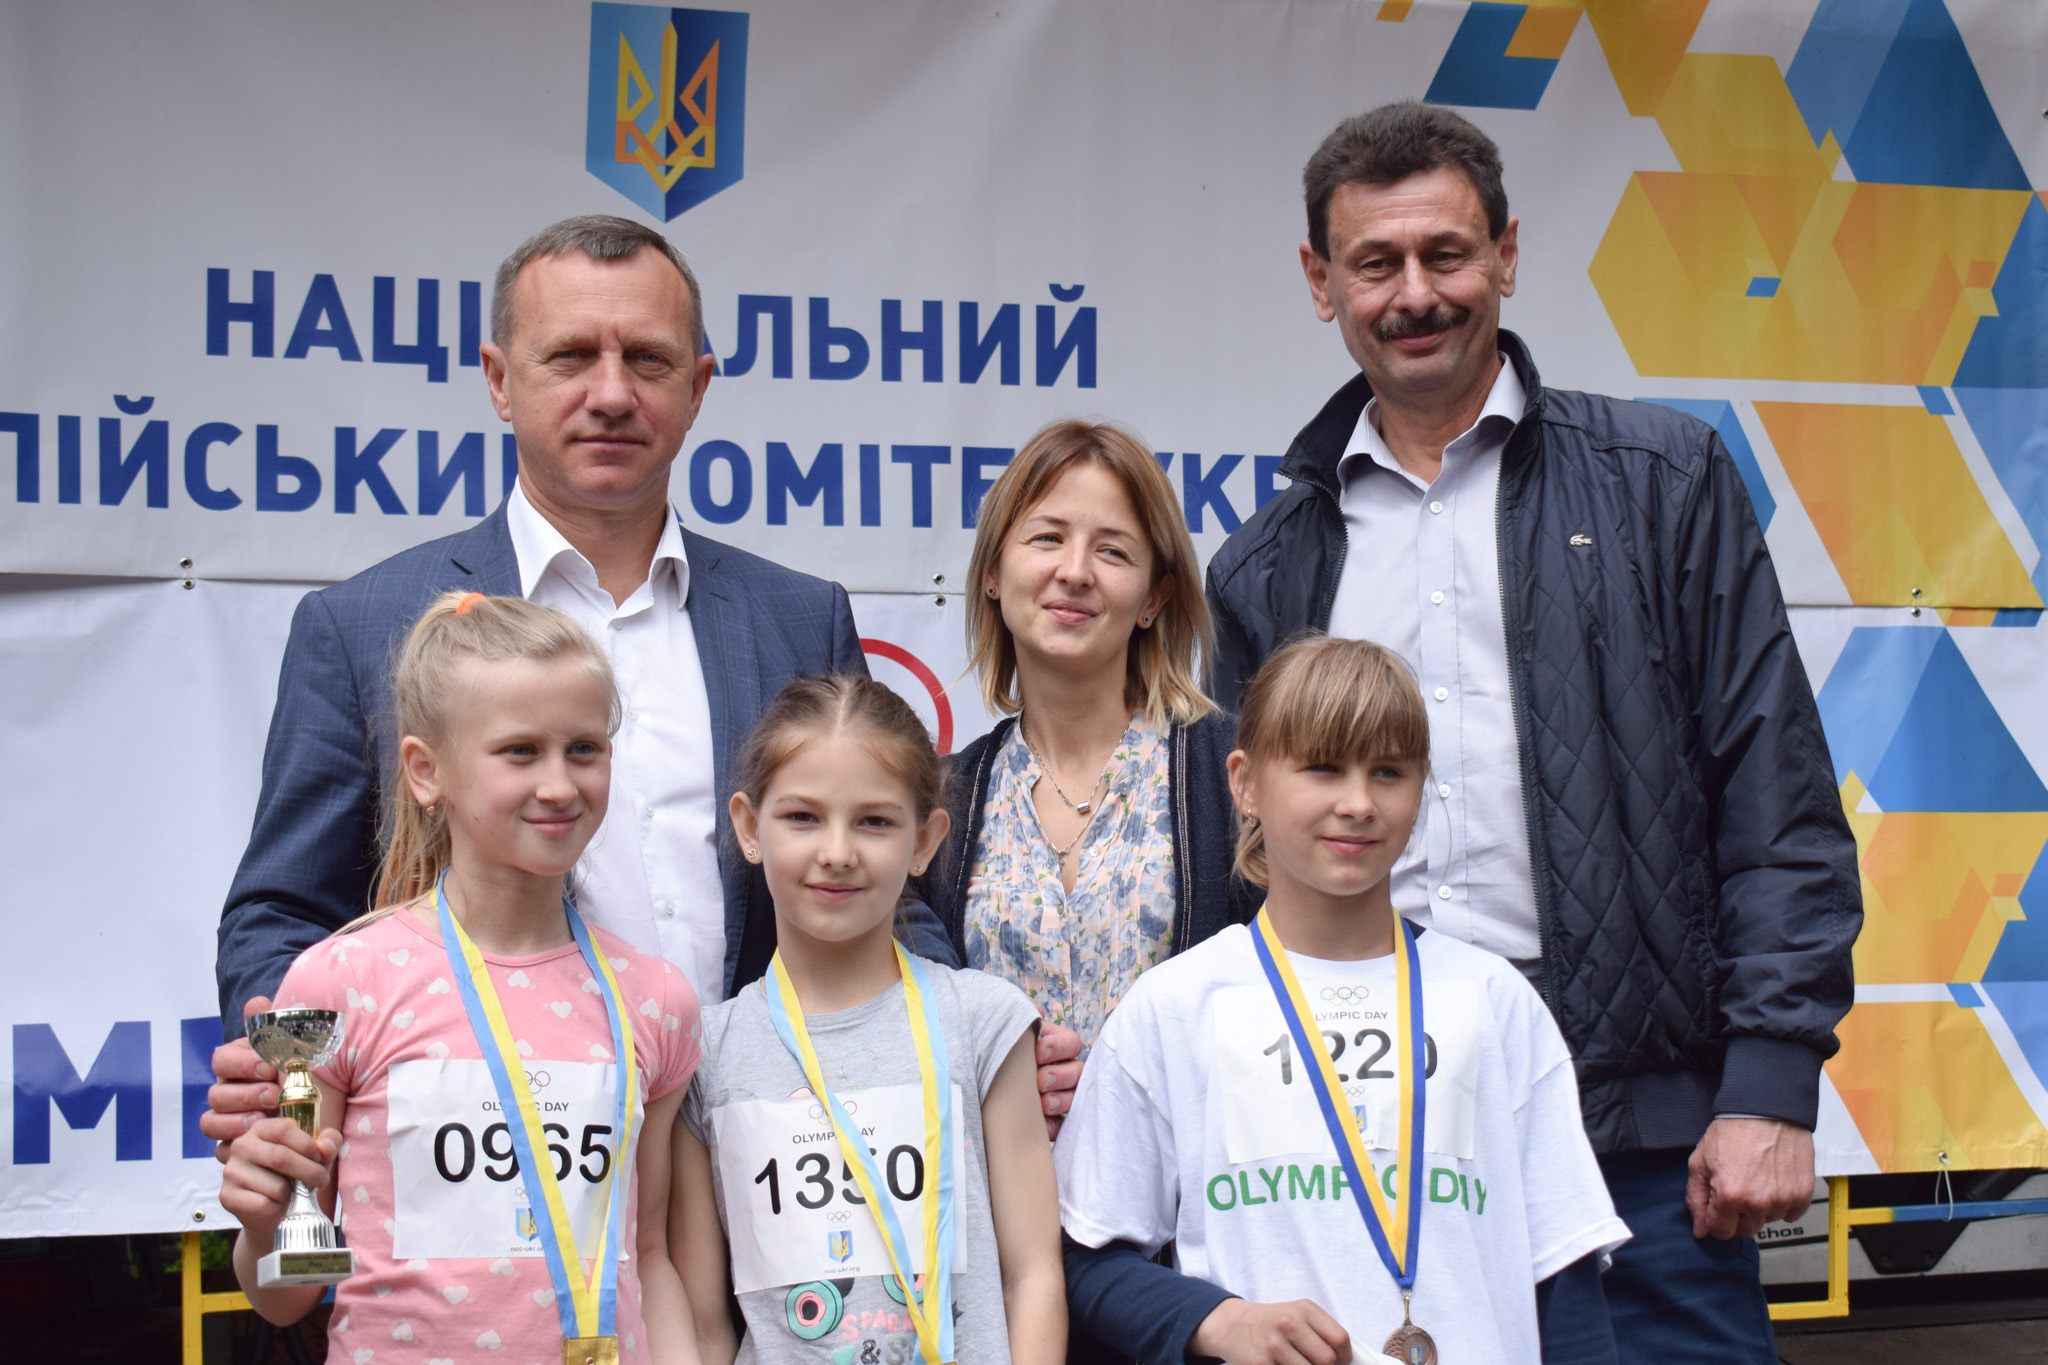 Всеукраїнський Олімпійський день провели сьогодні в Ужгороді у Боздоському парку